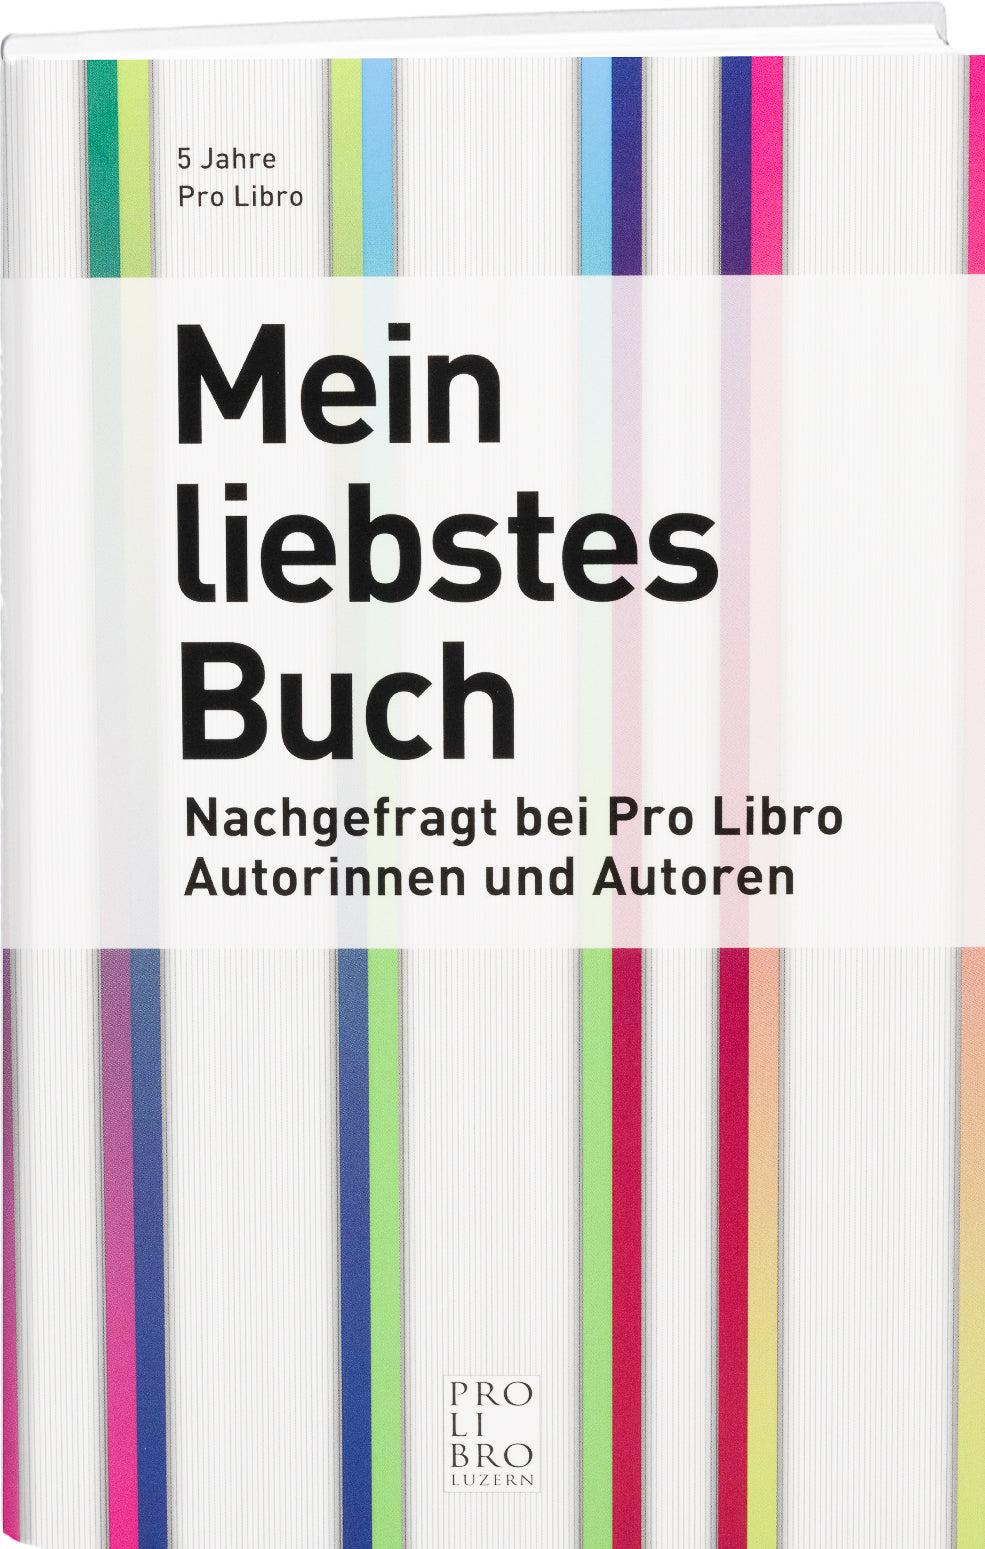 Peter Schulz: Mein liebstes Buch - prolibro.ch